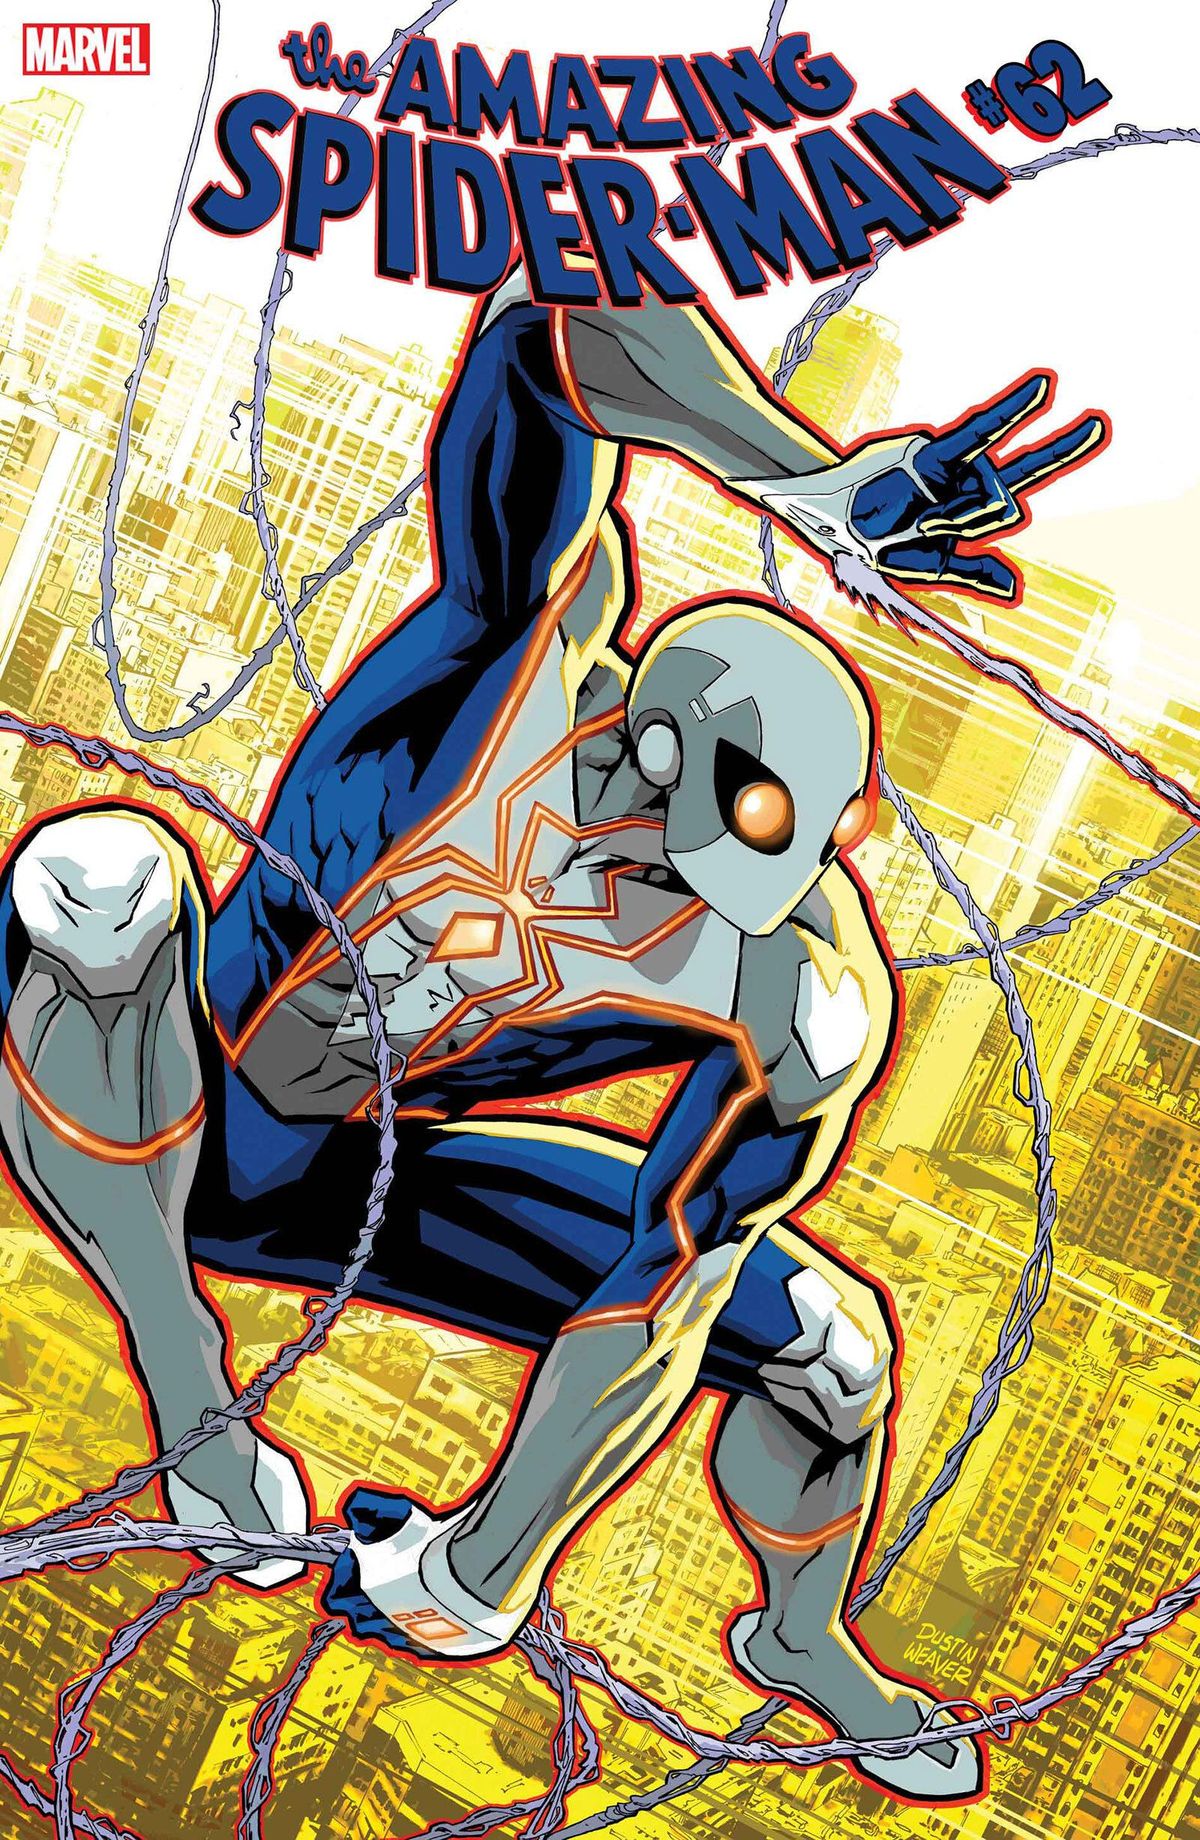 Marvel estreia o novo traje de alta tecnologia do Homem-Aranha